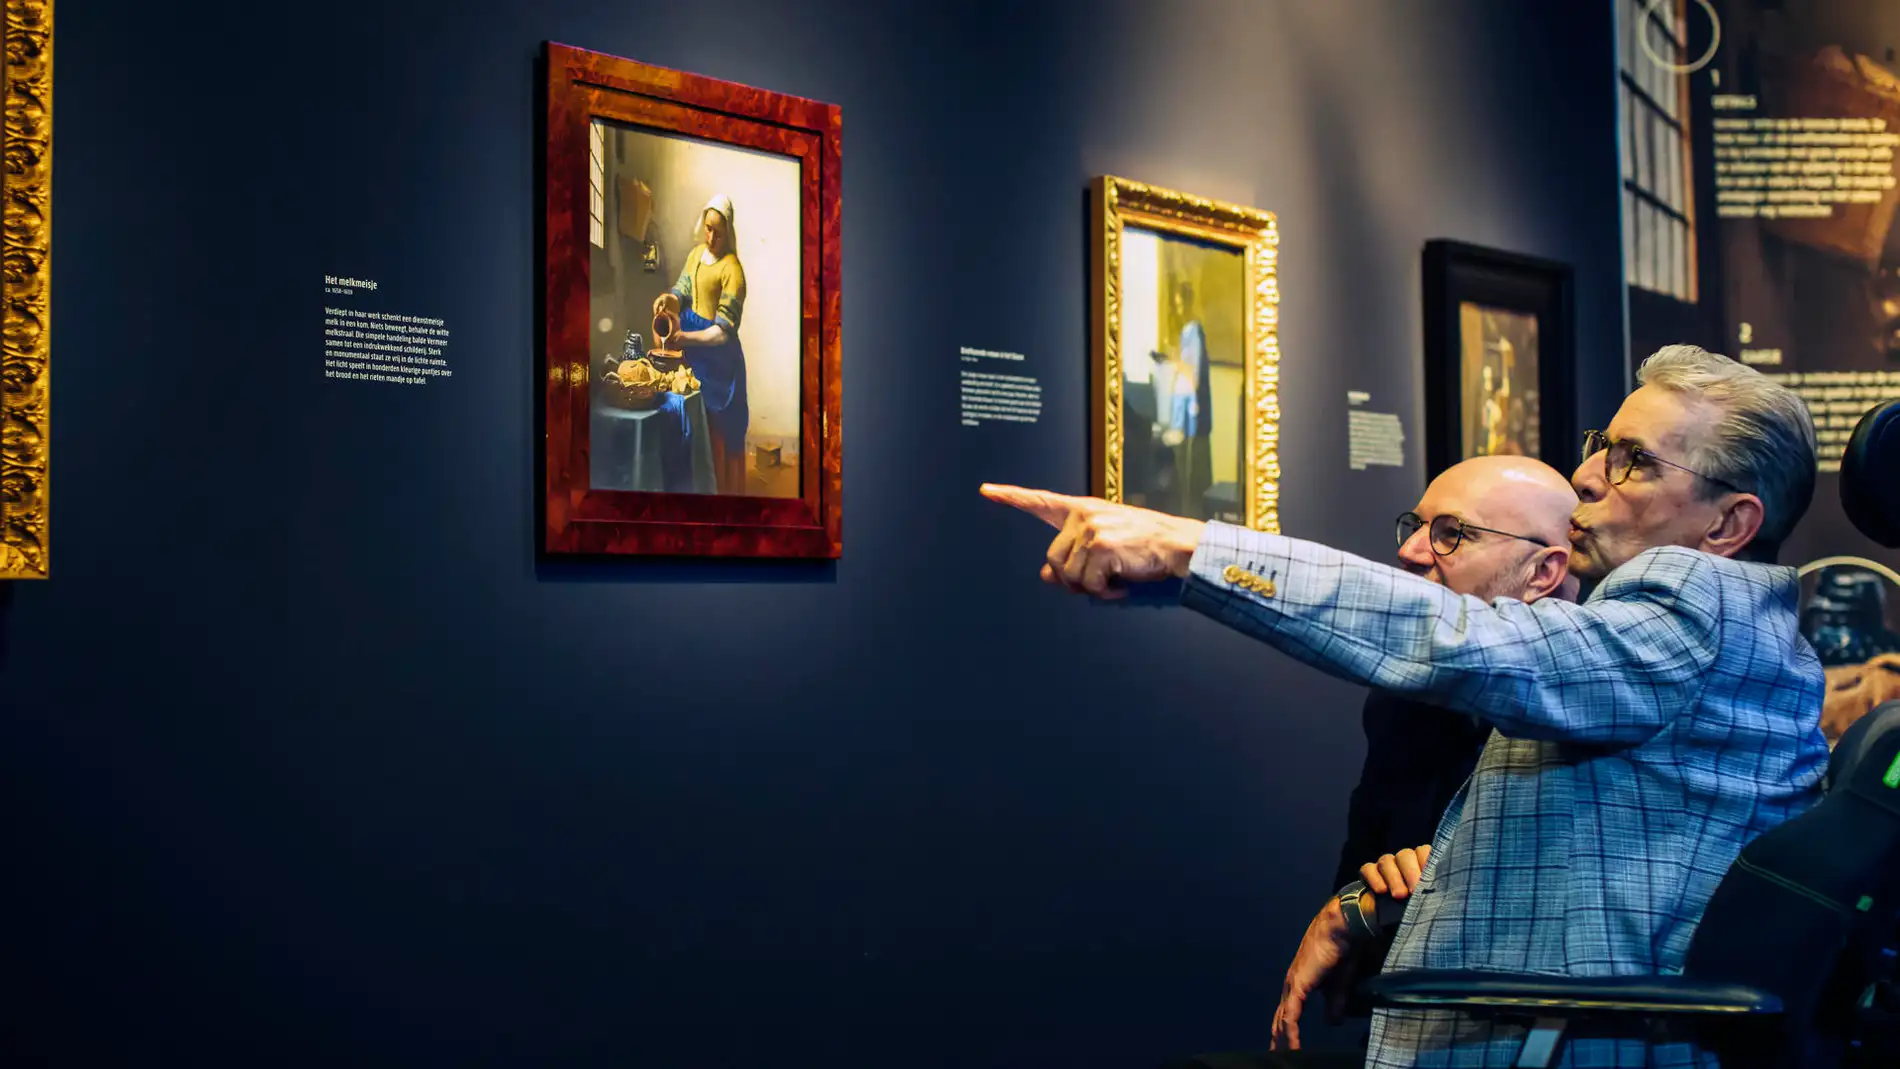 Admirando las obras de Vermeer